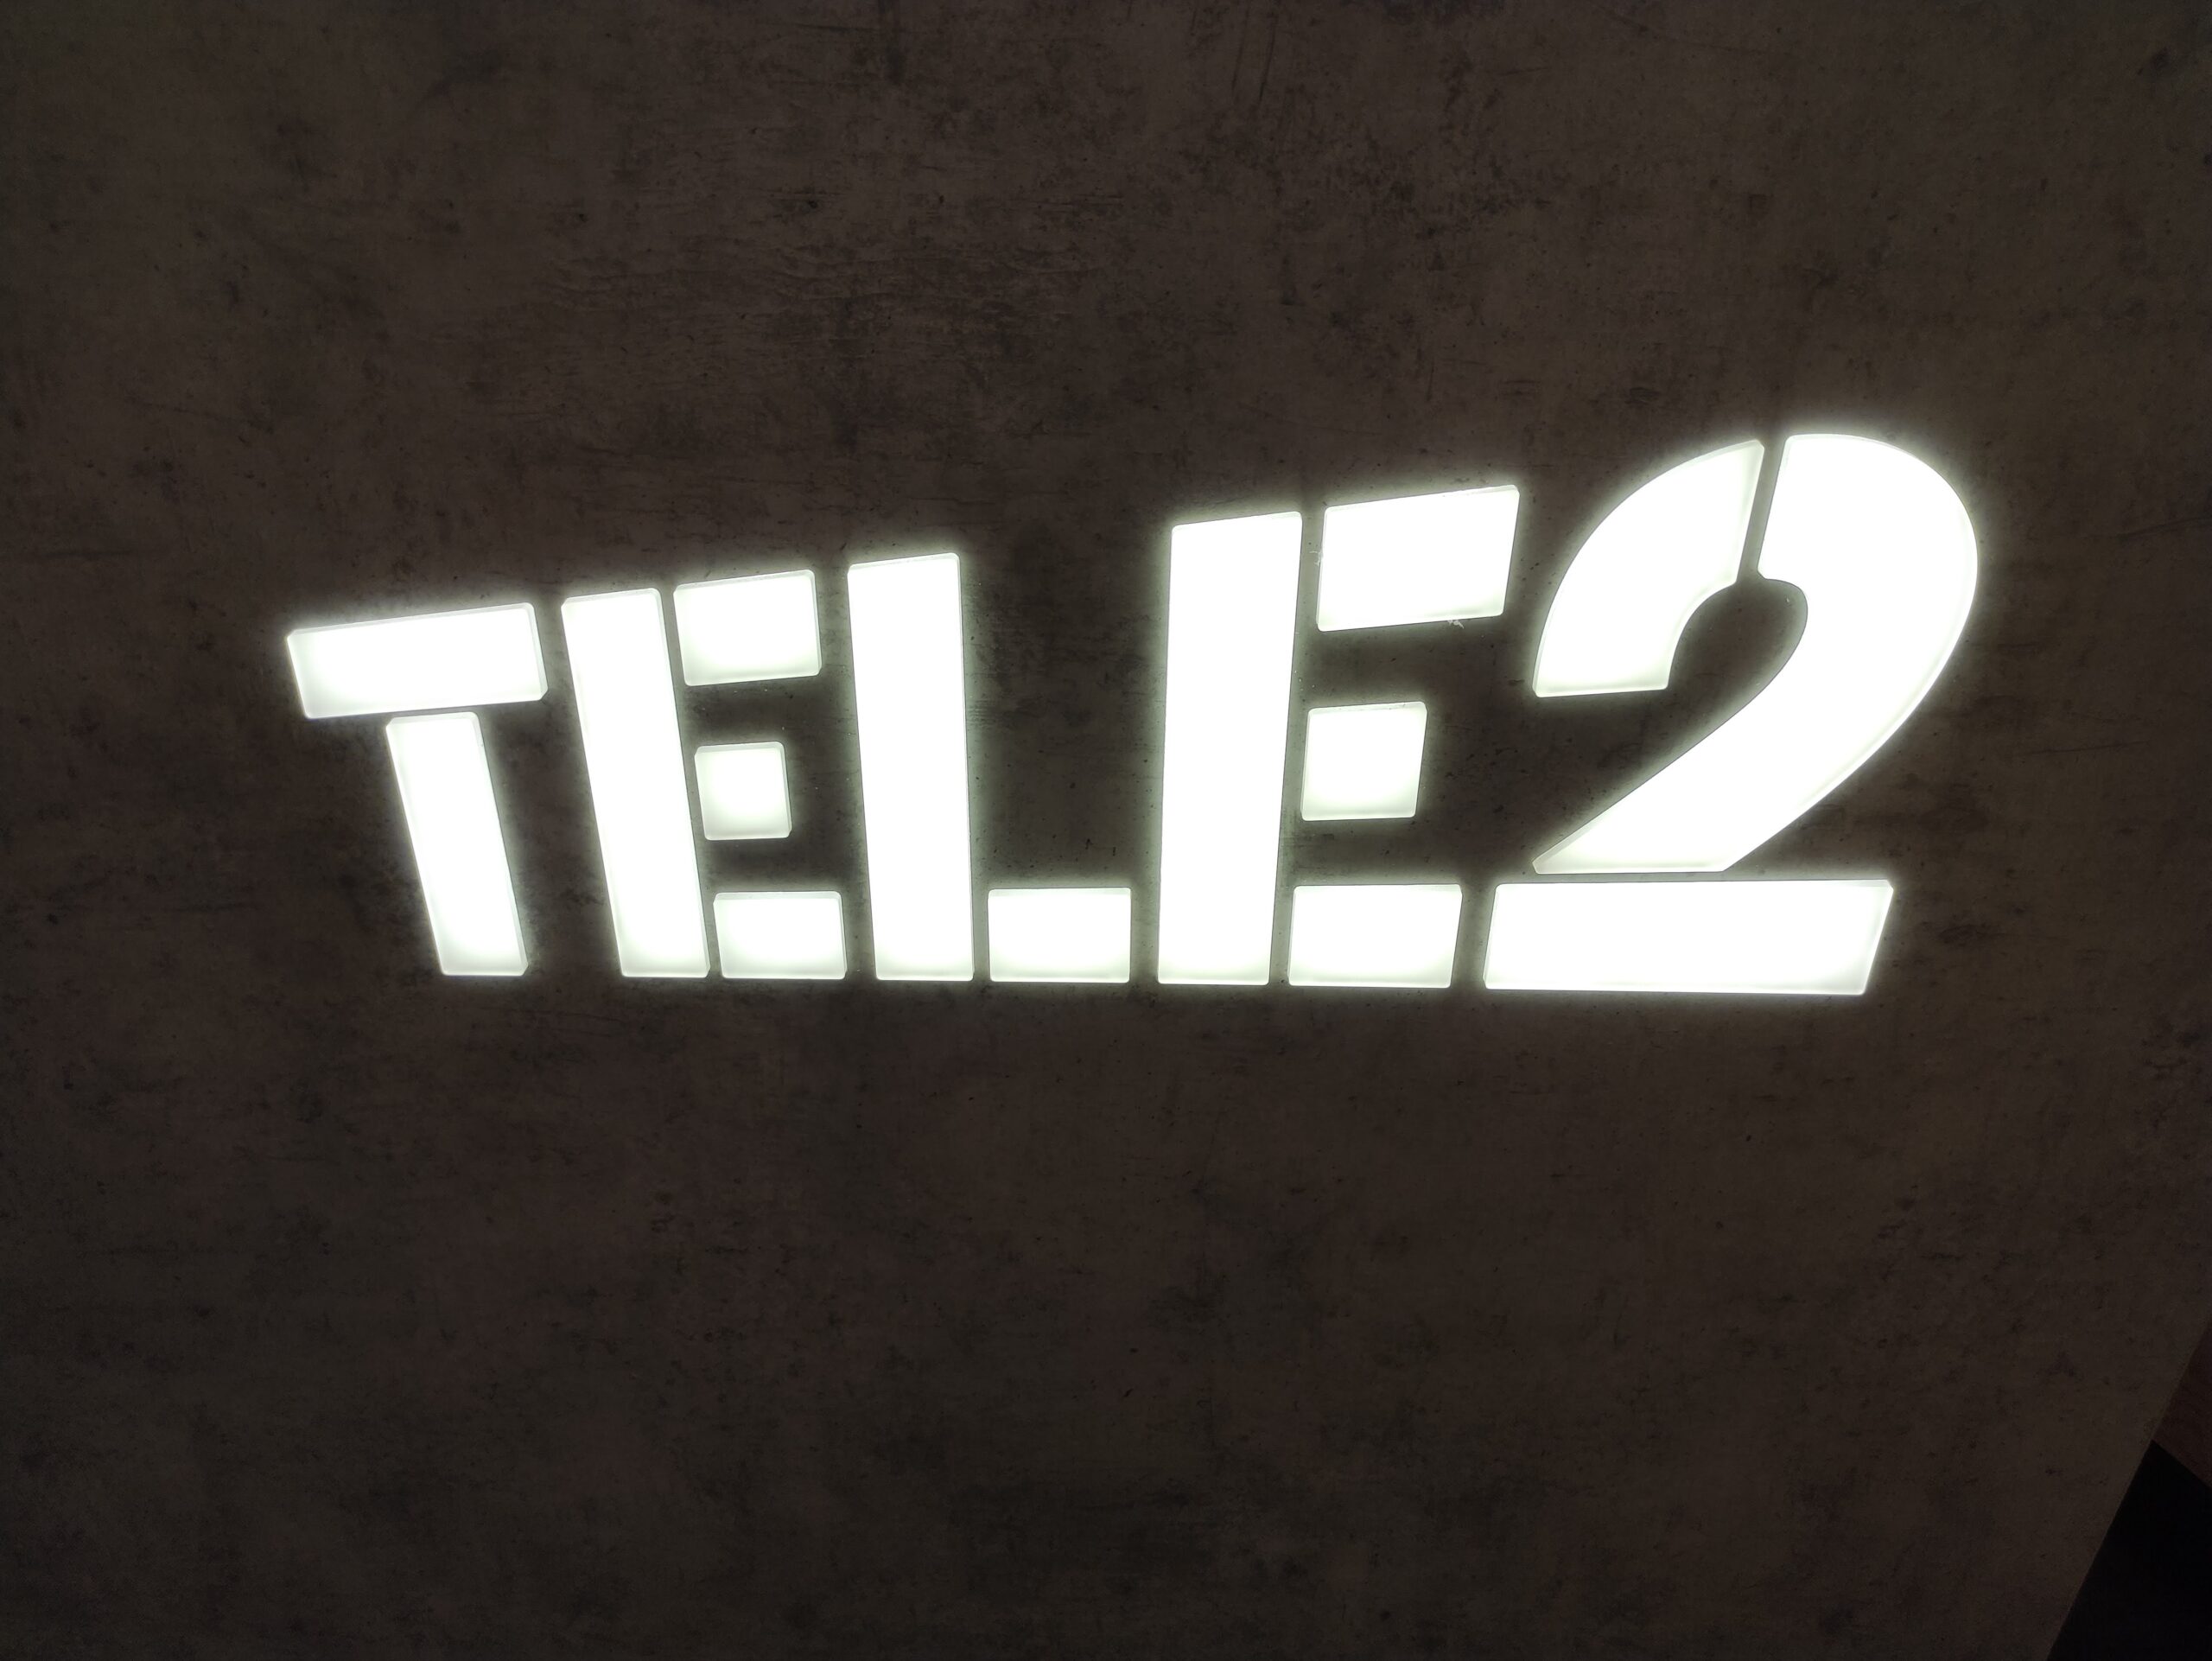 Tele2 Estonia InVue installation 2022